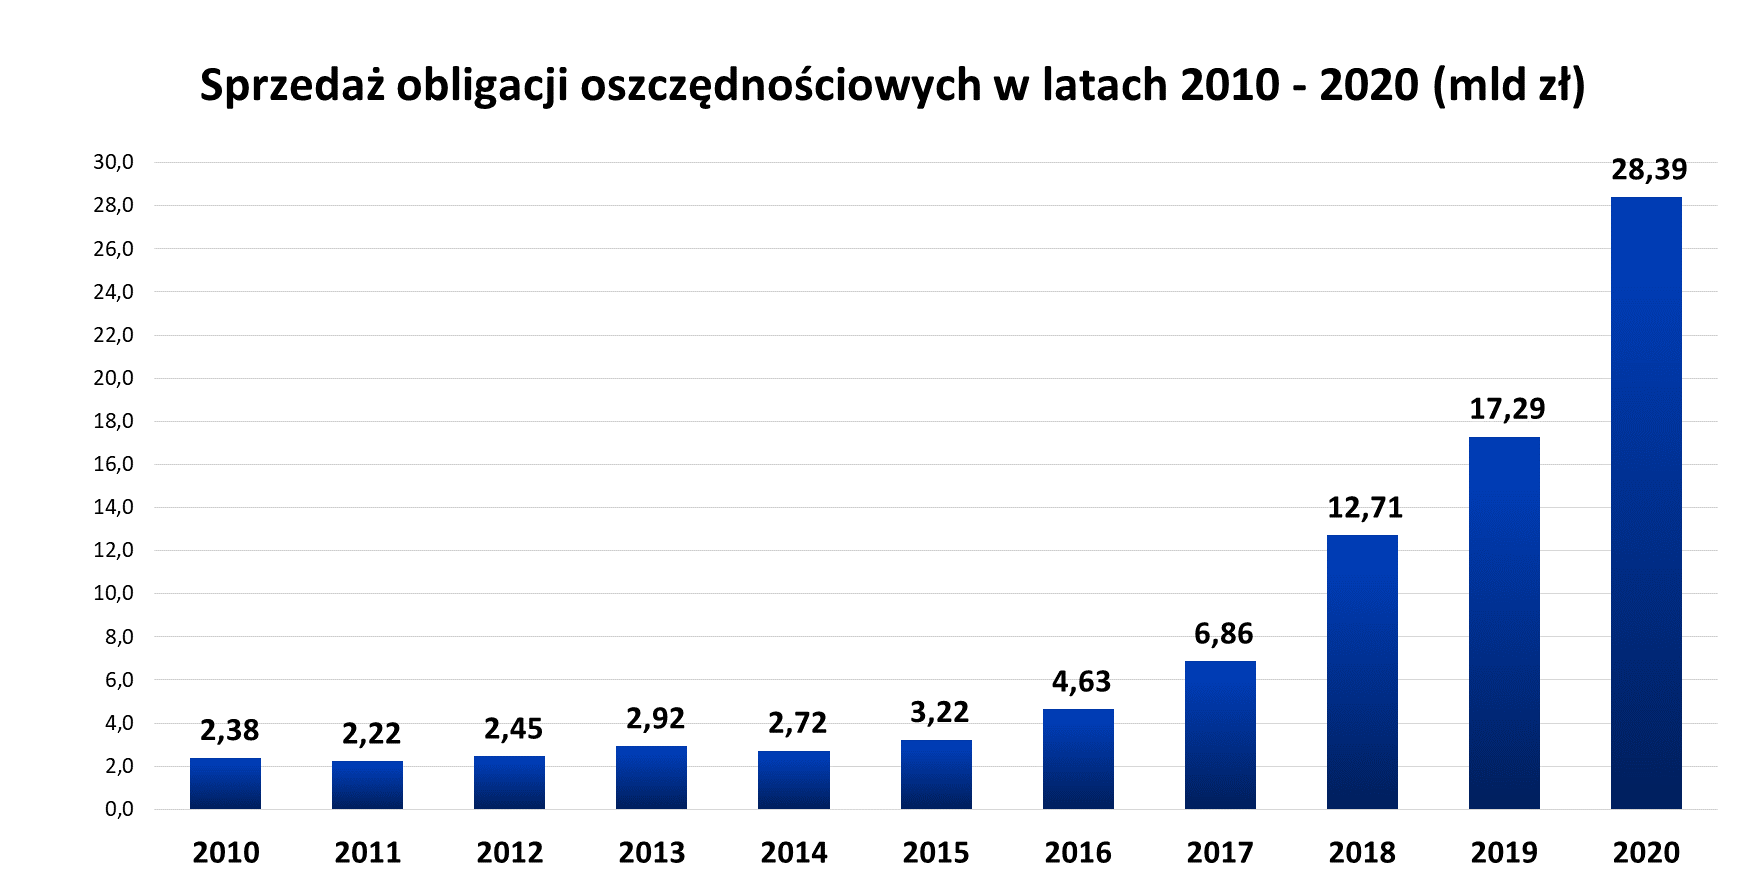 Wykres słupkowy przedstawiający sprzedaż obligacji oszczędnościowych w latach 2010-2020 (mld zł)